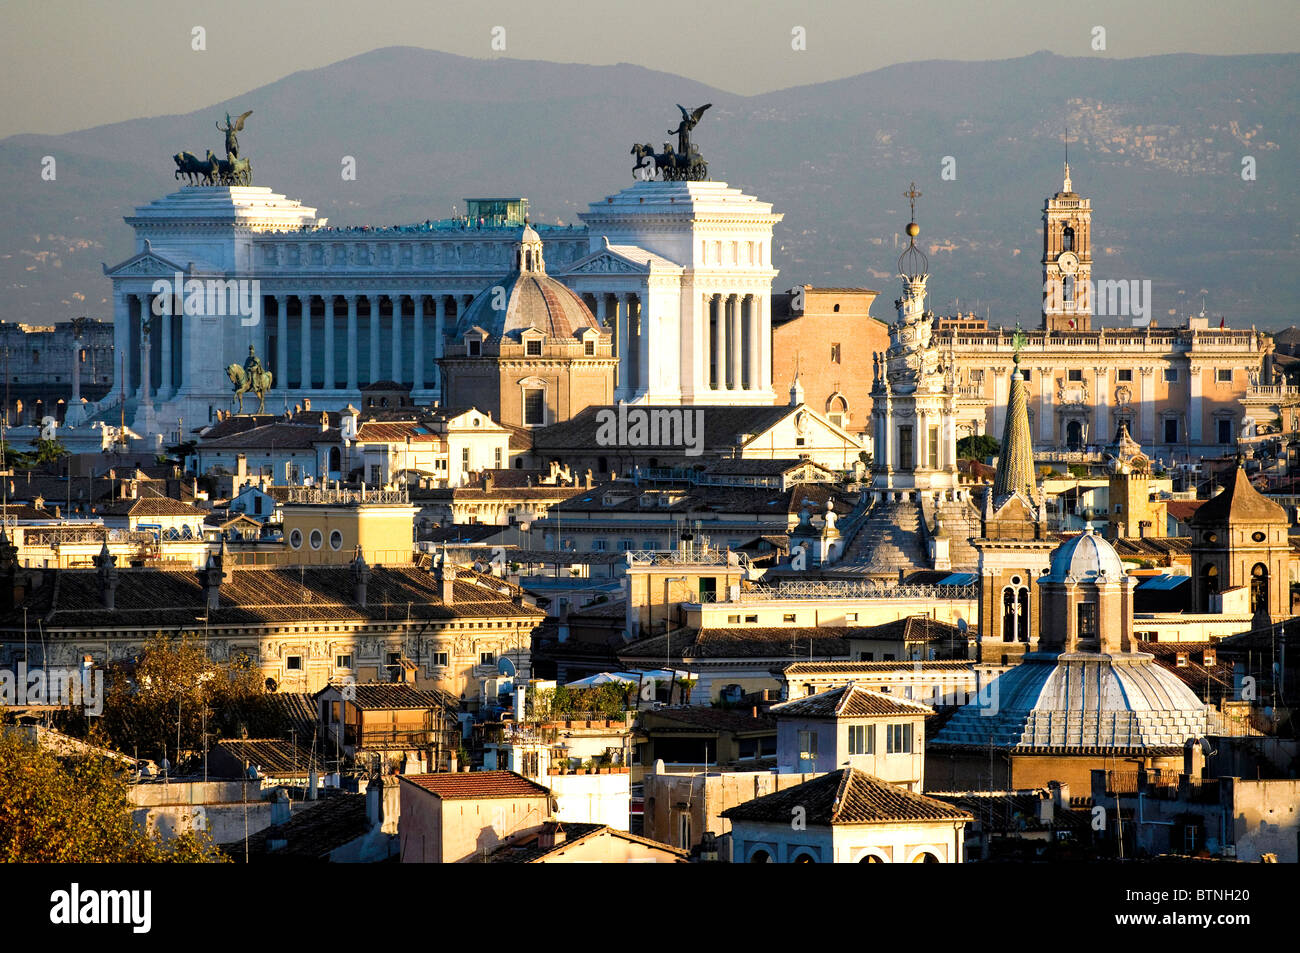 Vue sur les toits de Rome pris du Castel Sant'Angelo, Rome Italie Banque D'Images